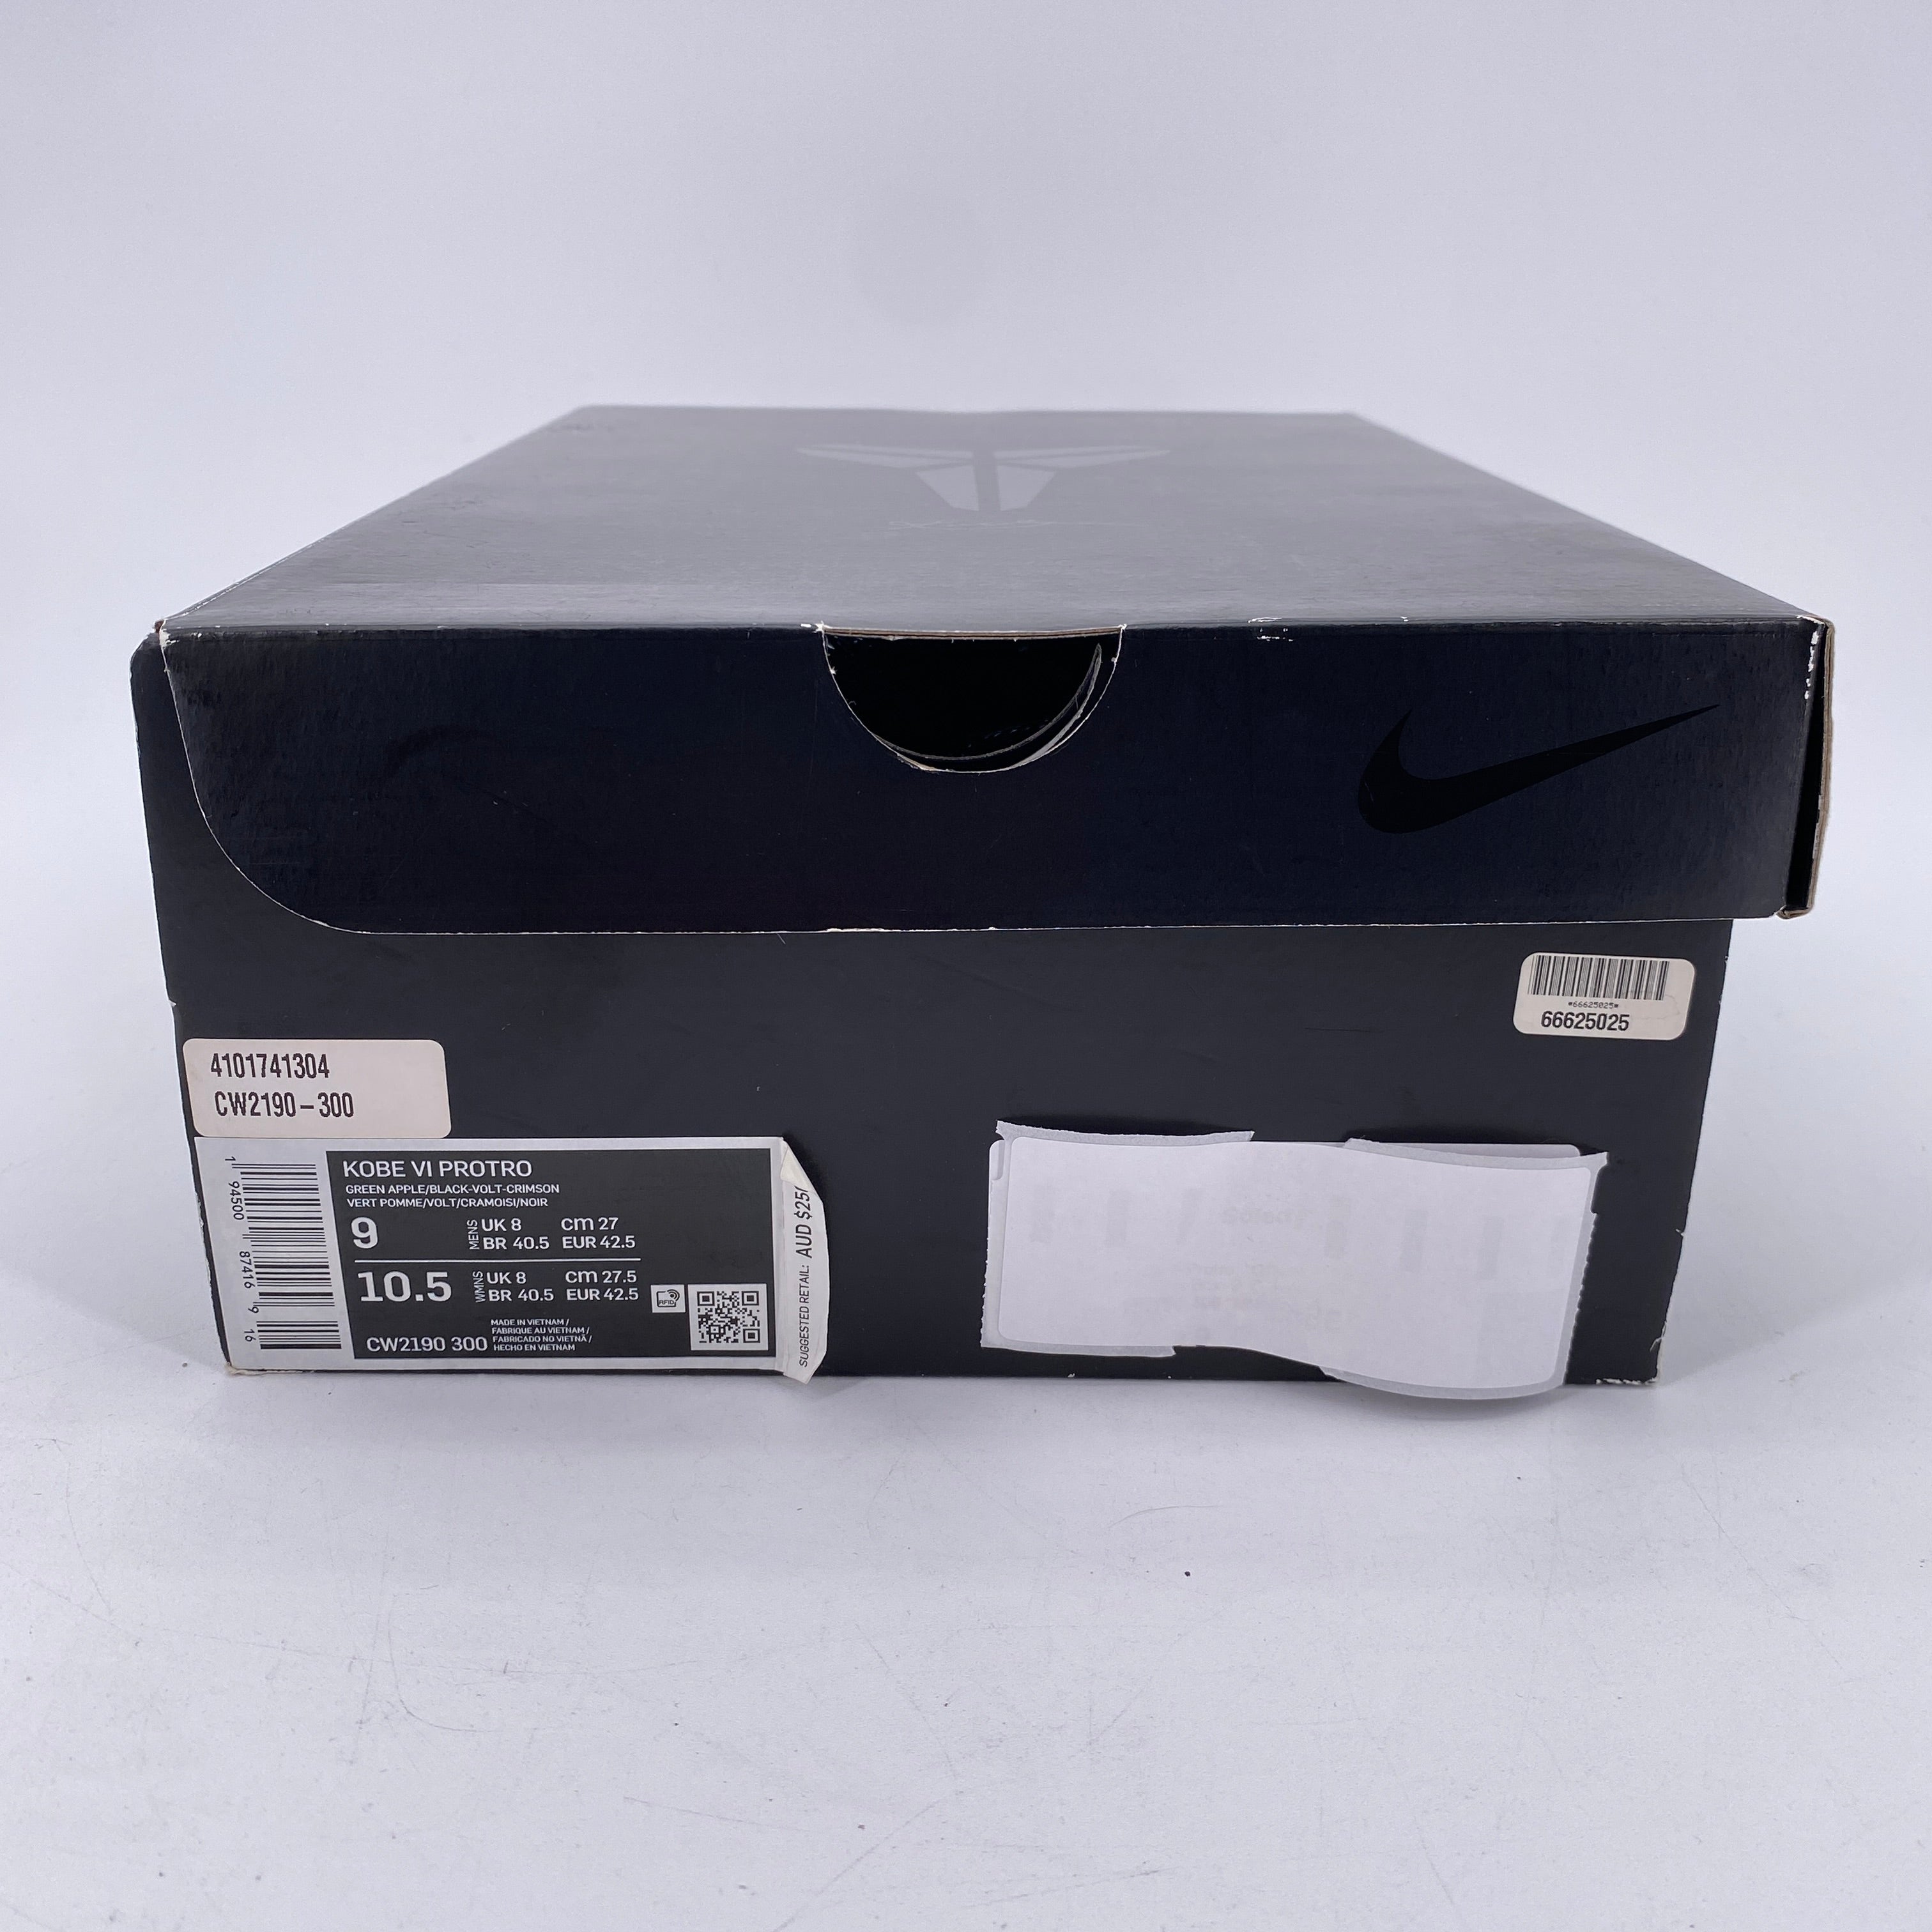 Nike Kobe 6 Protro "Grinch" 2020 Used Size 9